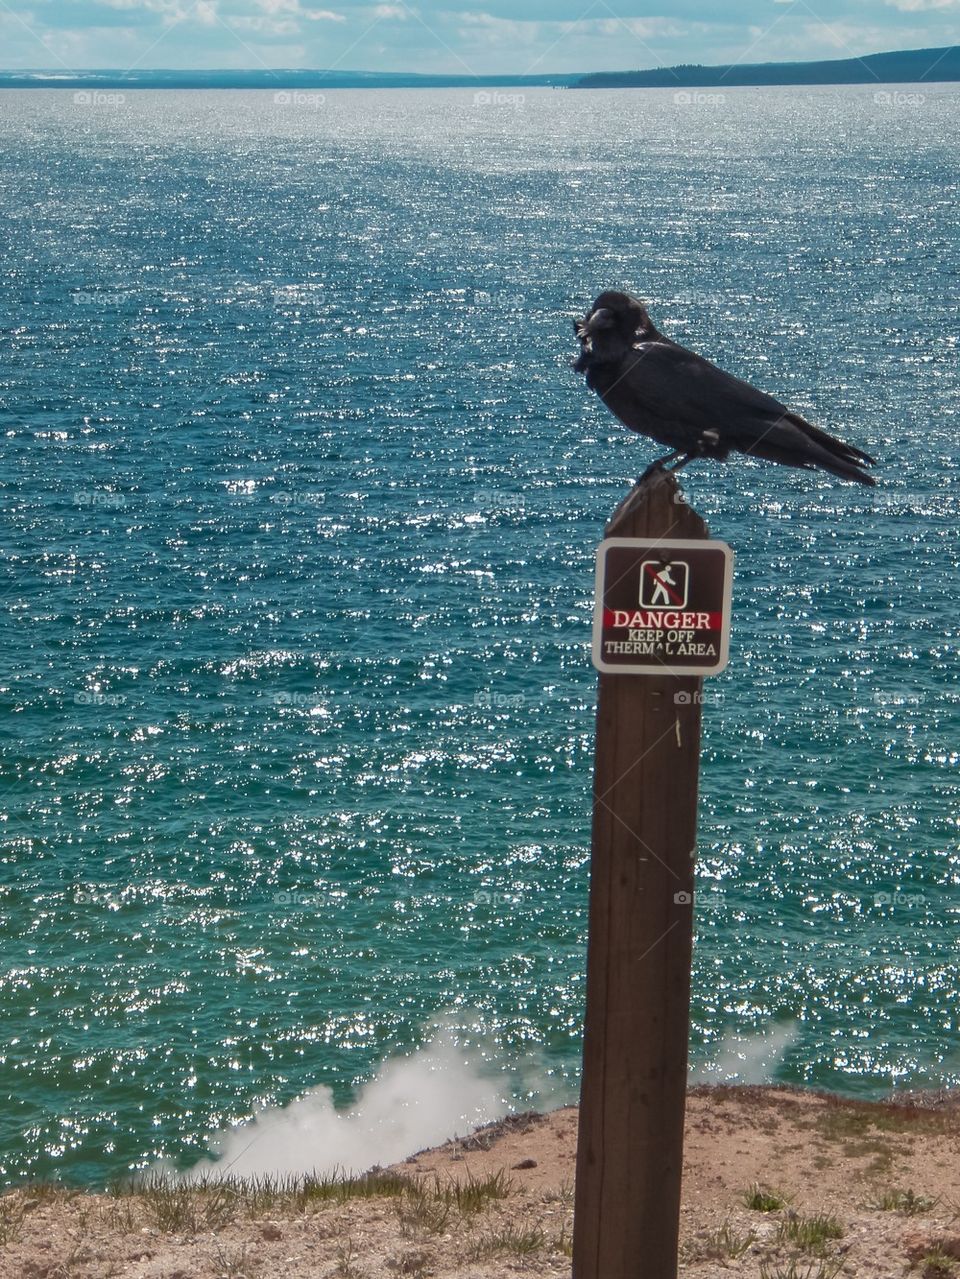 Danger crow